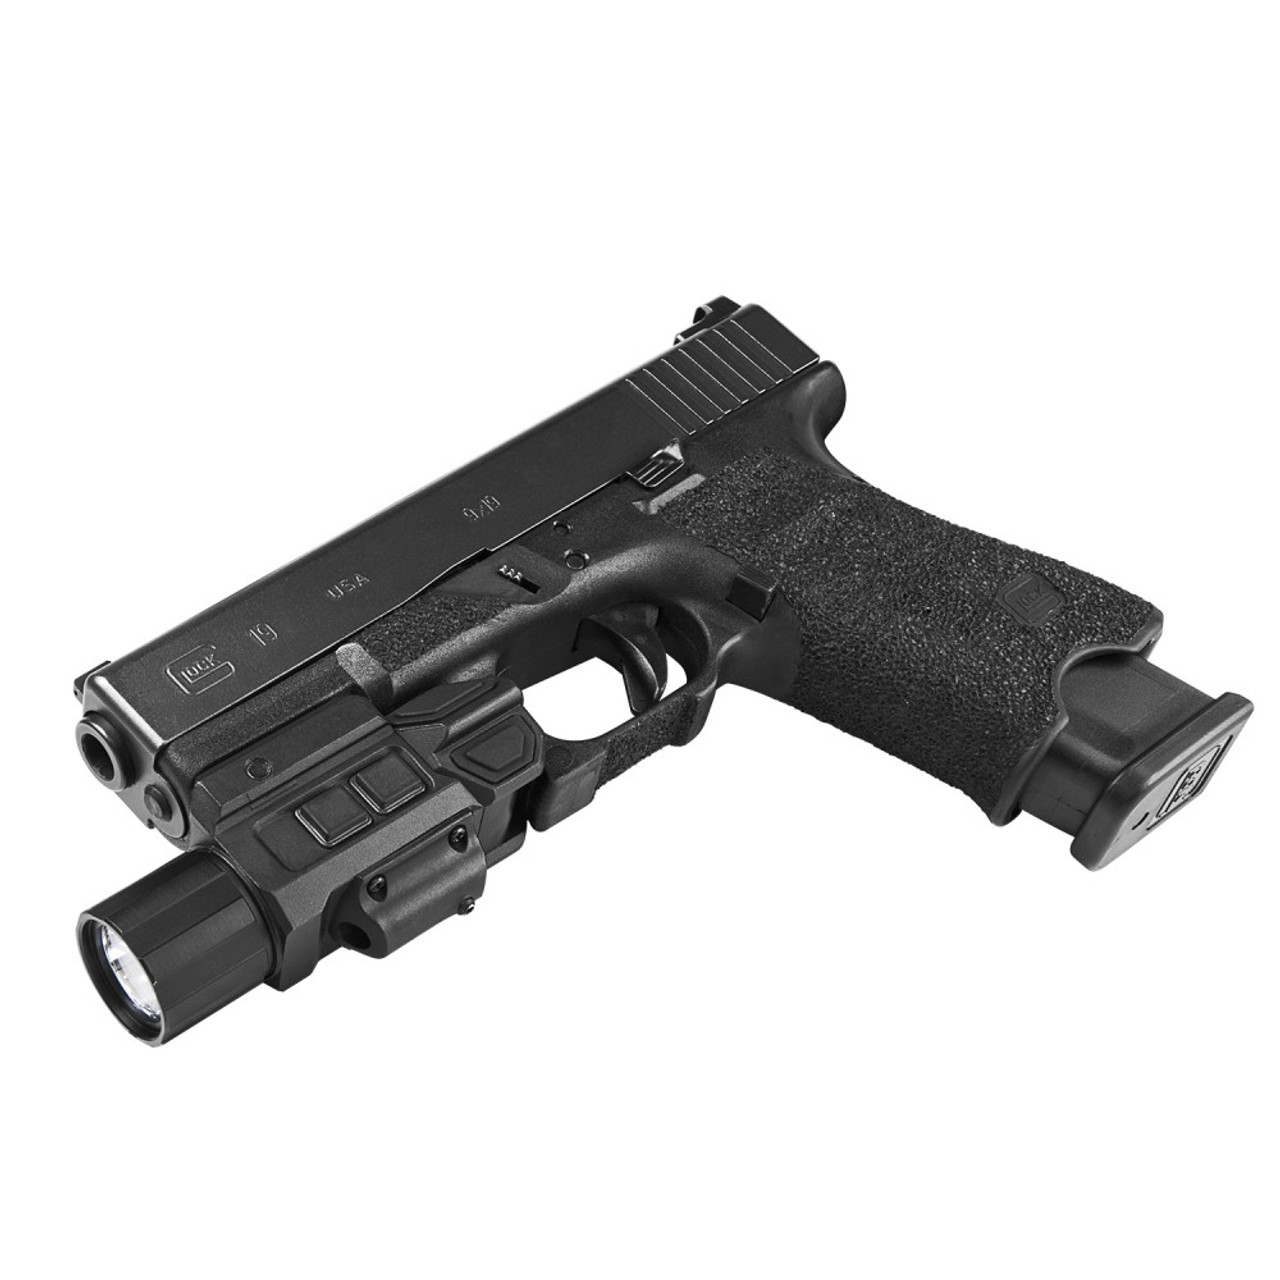 NcSTAR VAPFLSRV3 Gen3 Pistol Flashlight W/Strobe & Red Laser